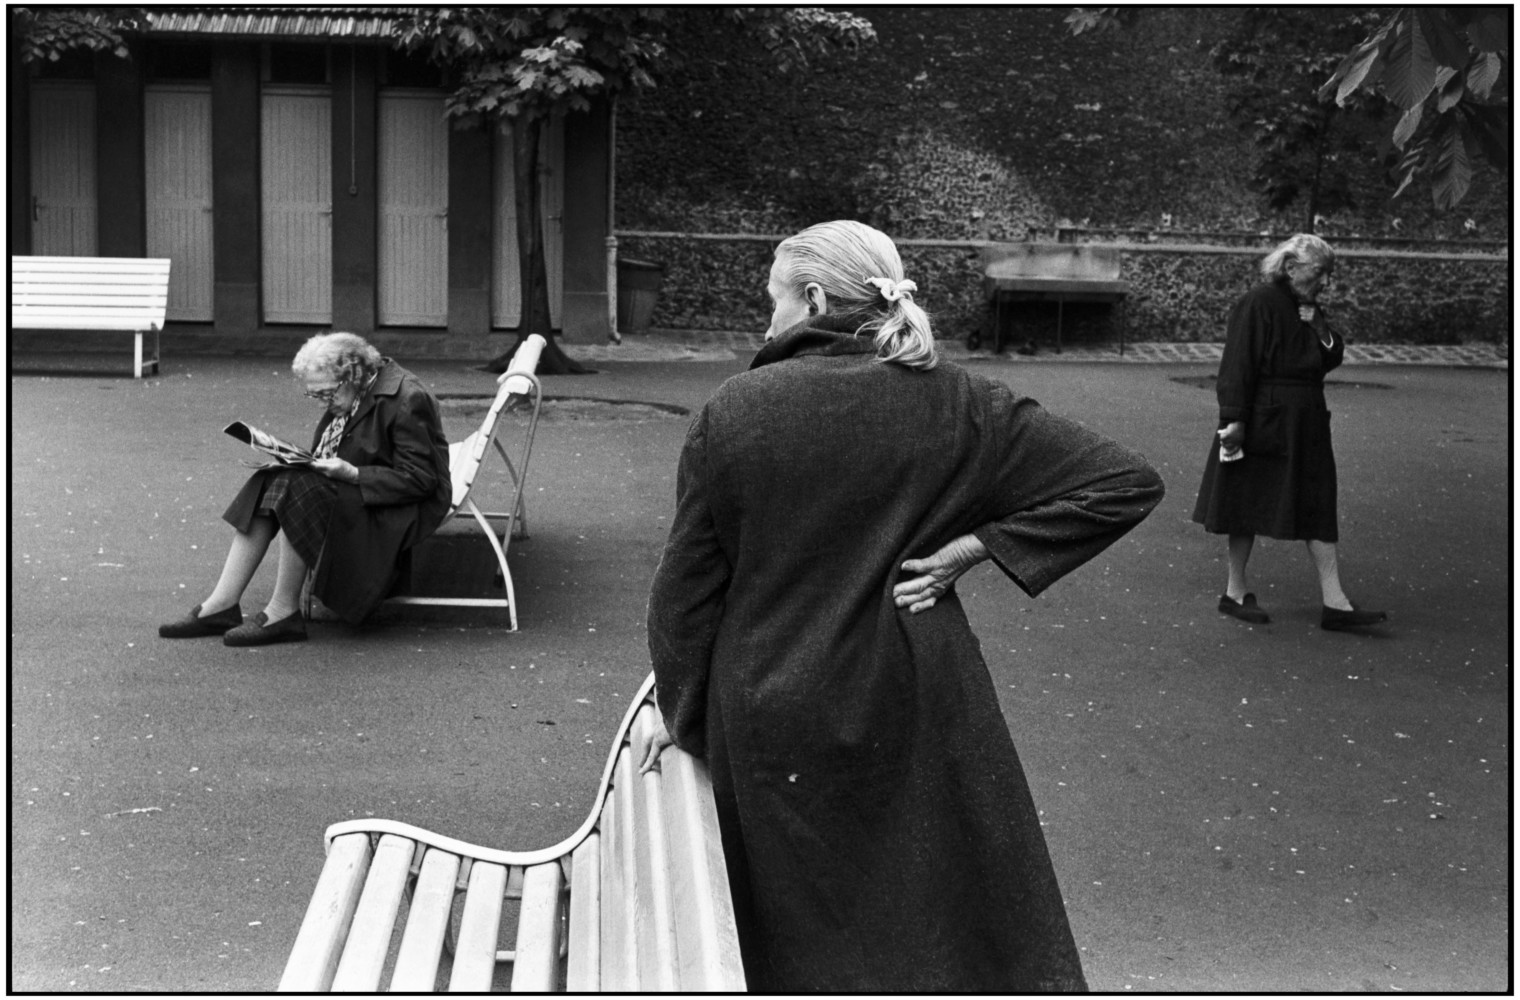 Дом престарелых, 1978. Фотограф Мартина Франк